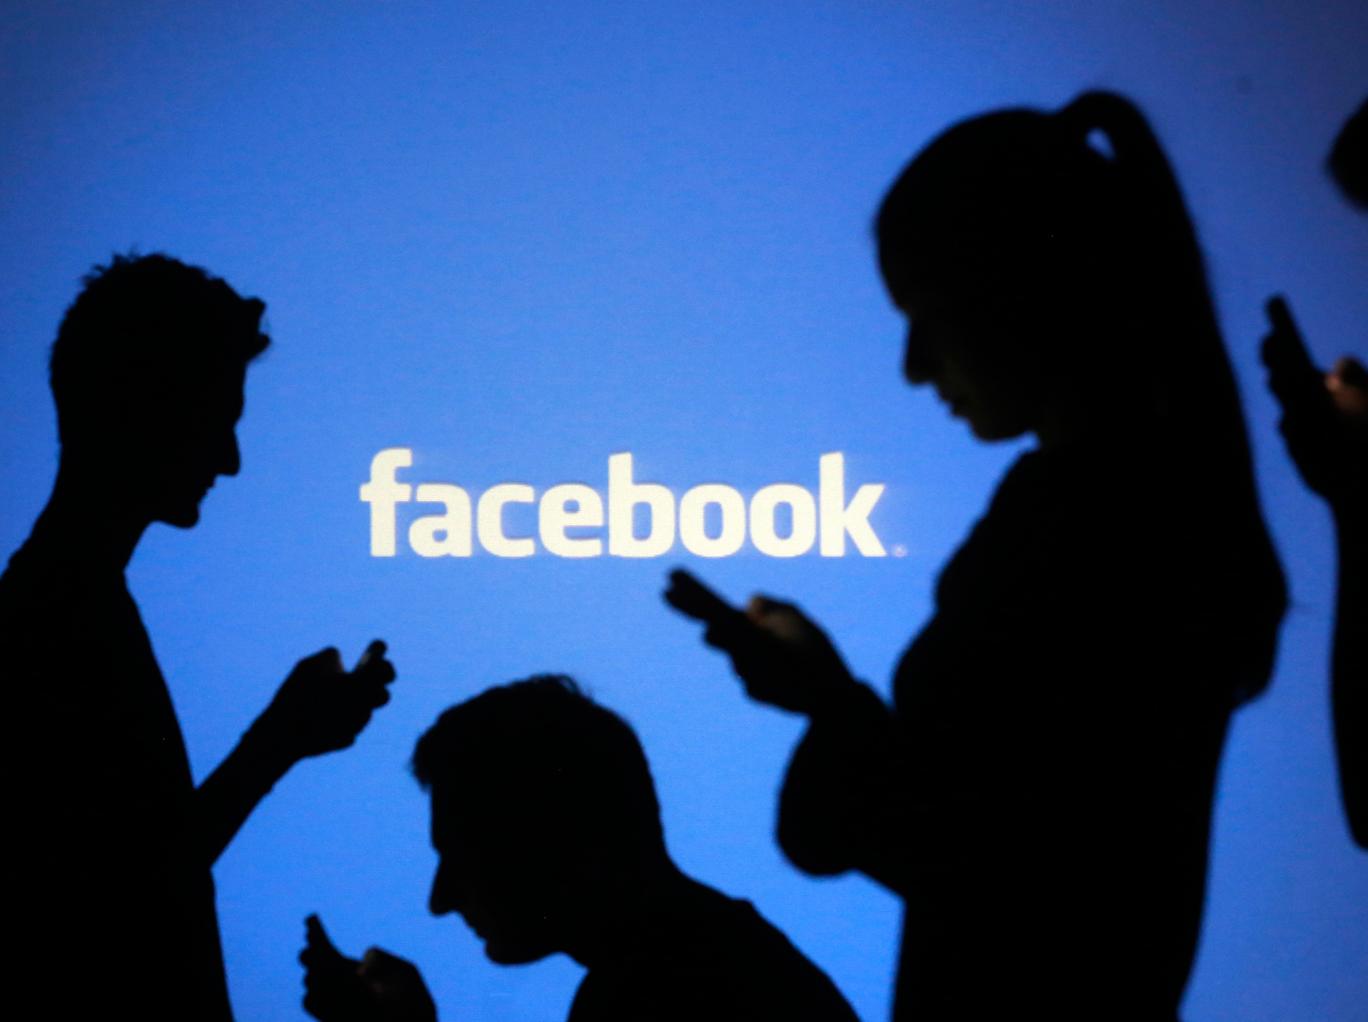 Facebook, non tutti i nostri contatti sono veri amici